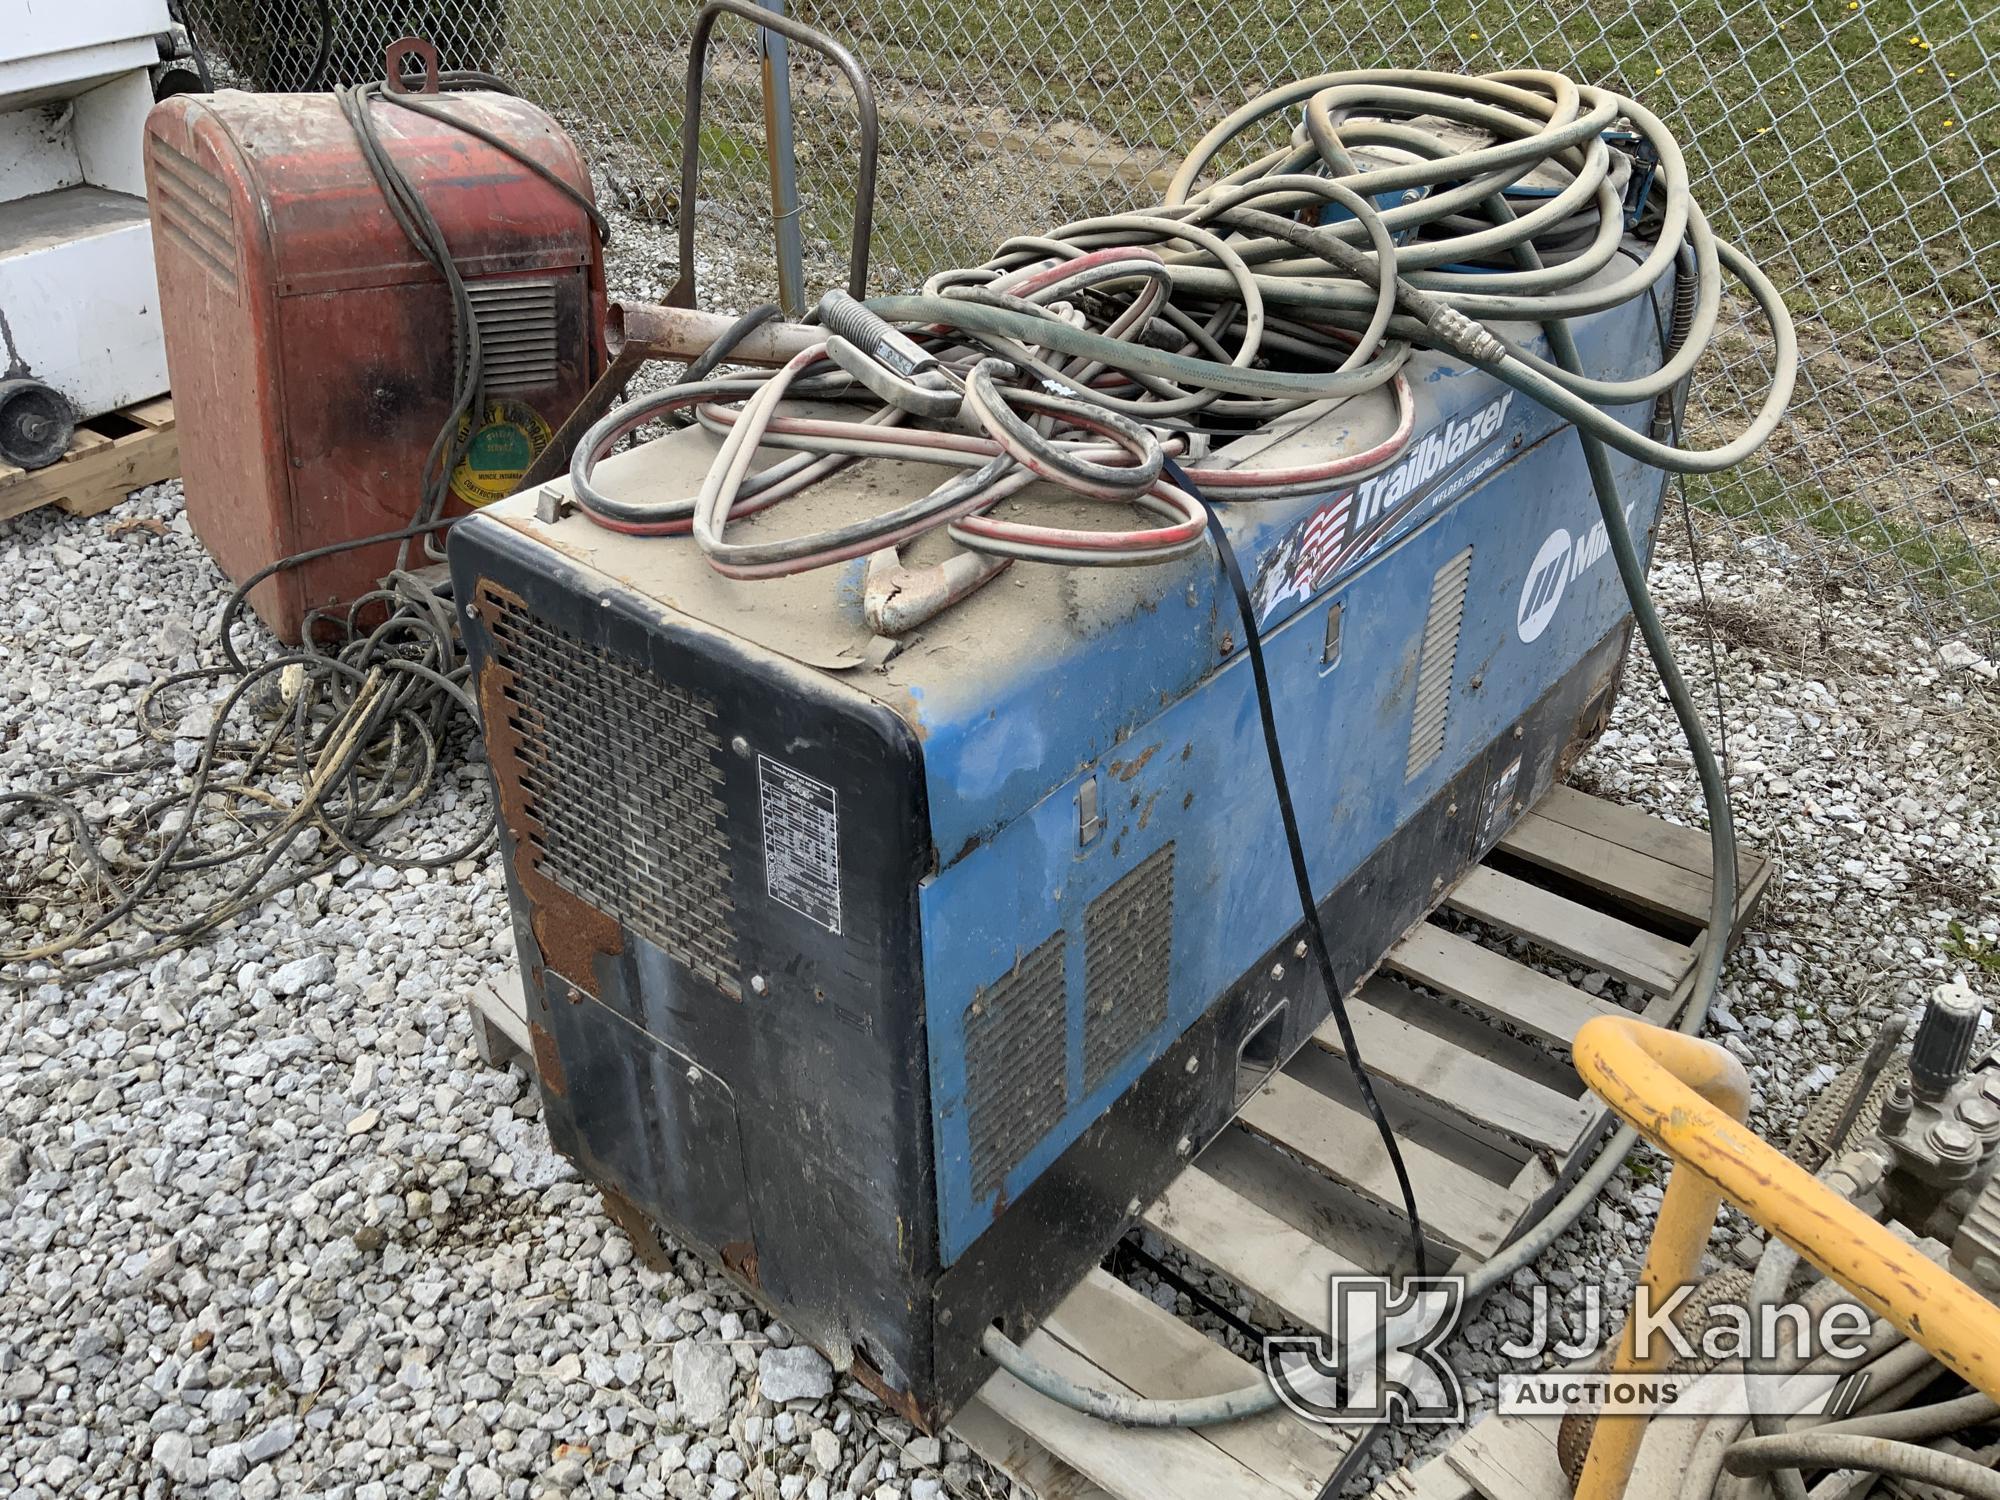 (Fort Wayne, IN) Miller Trailblazer 302 Air Pak Welder/Generator Condition Unknown